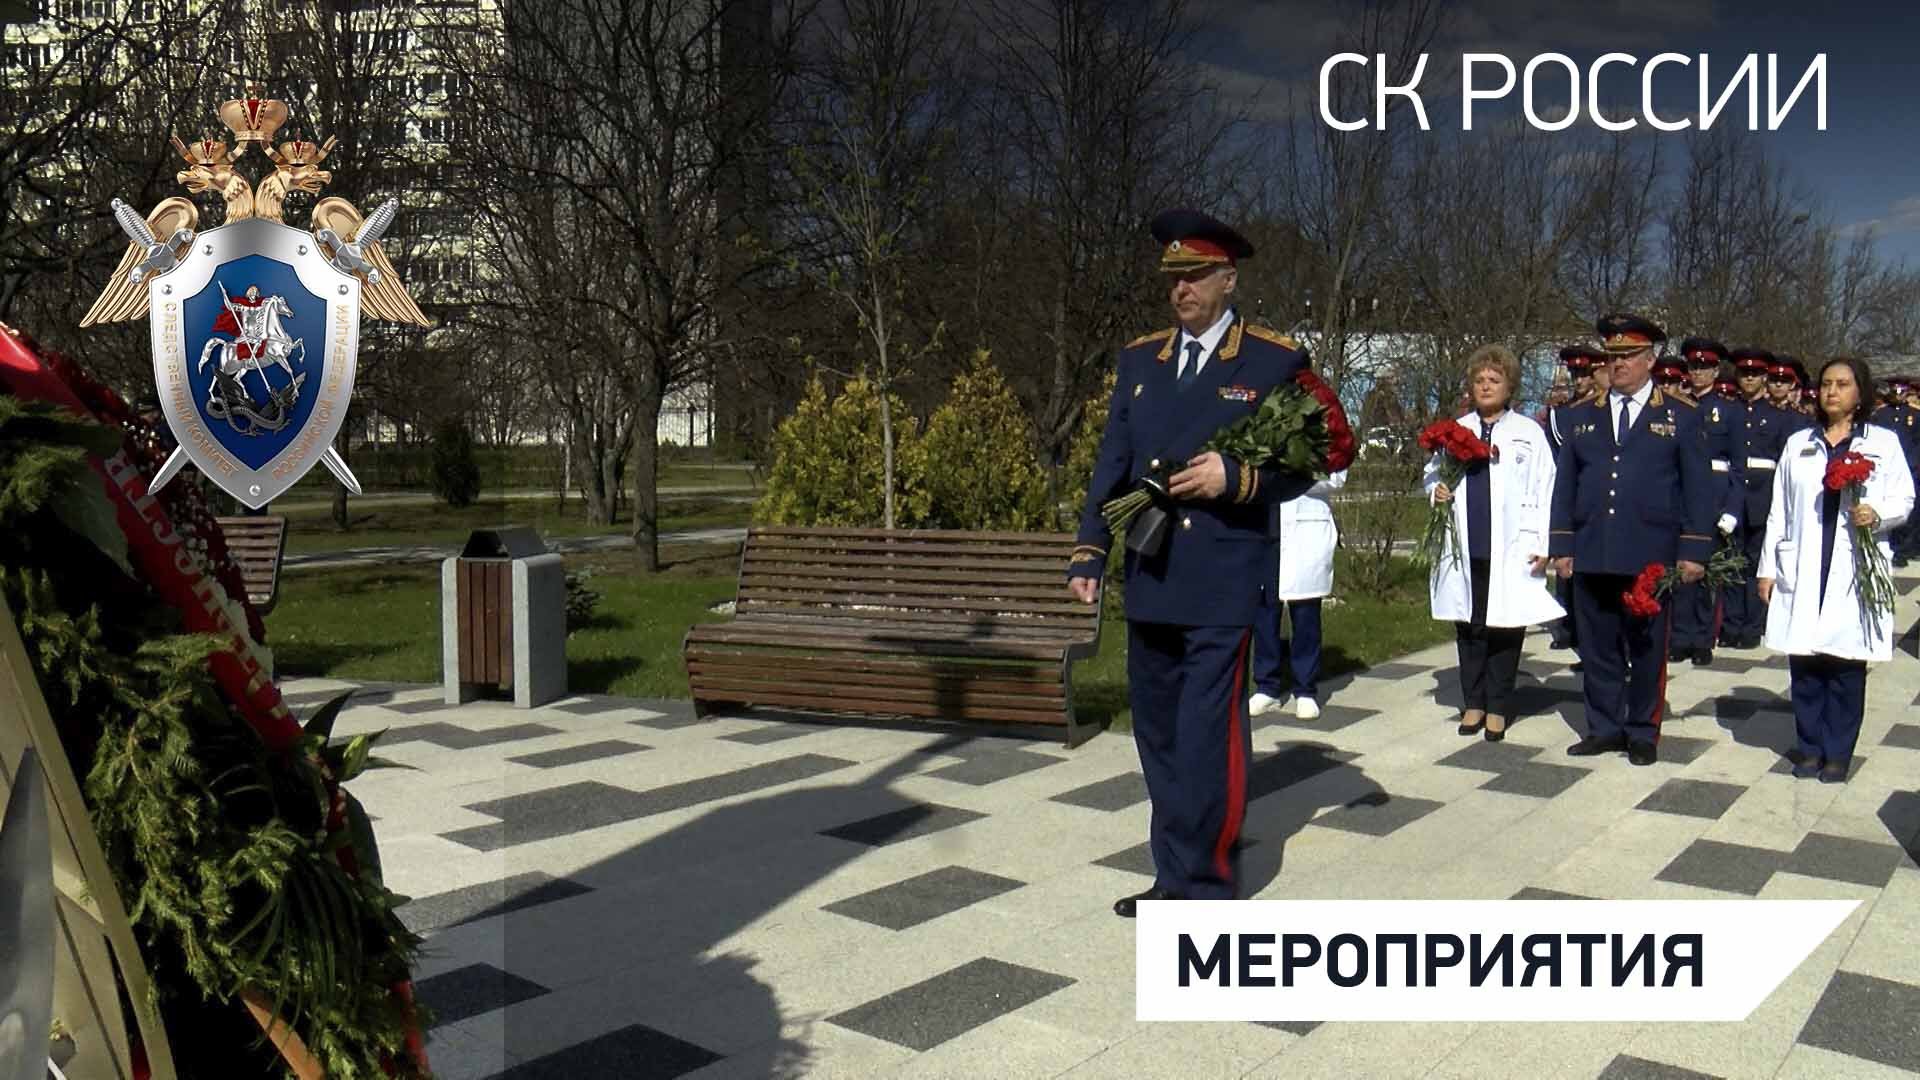 Председатель СК России посетил Госпиталь для ветеранов войн № 2 г. Москвы